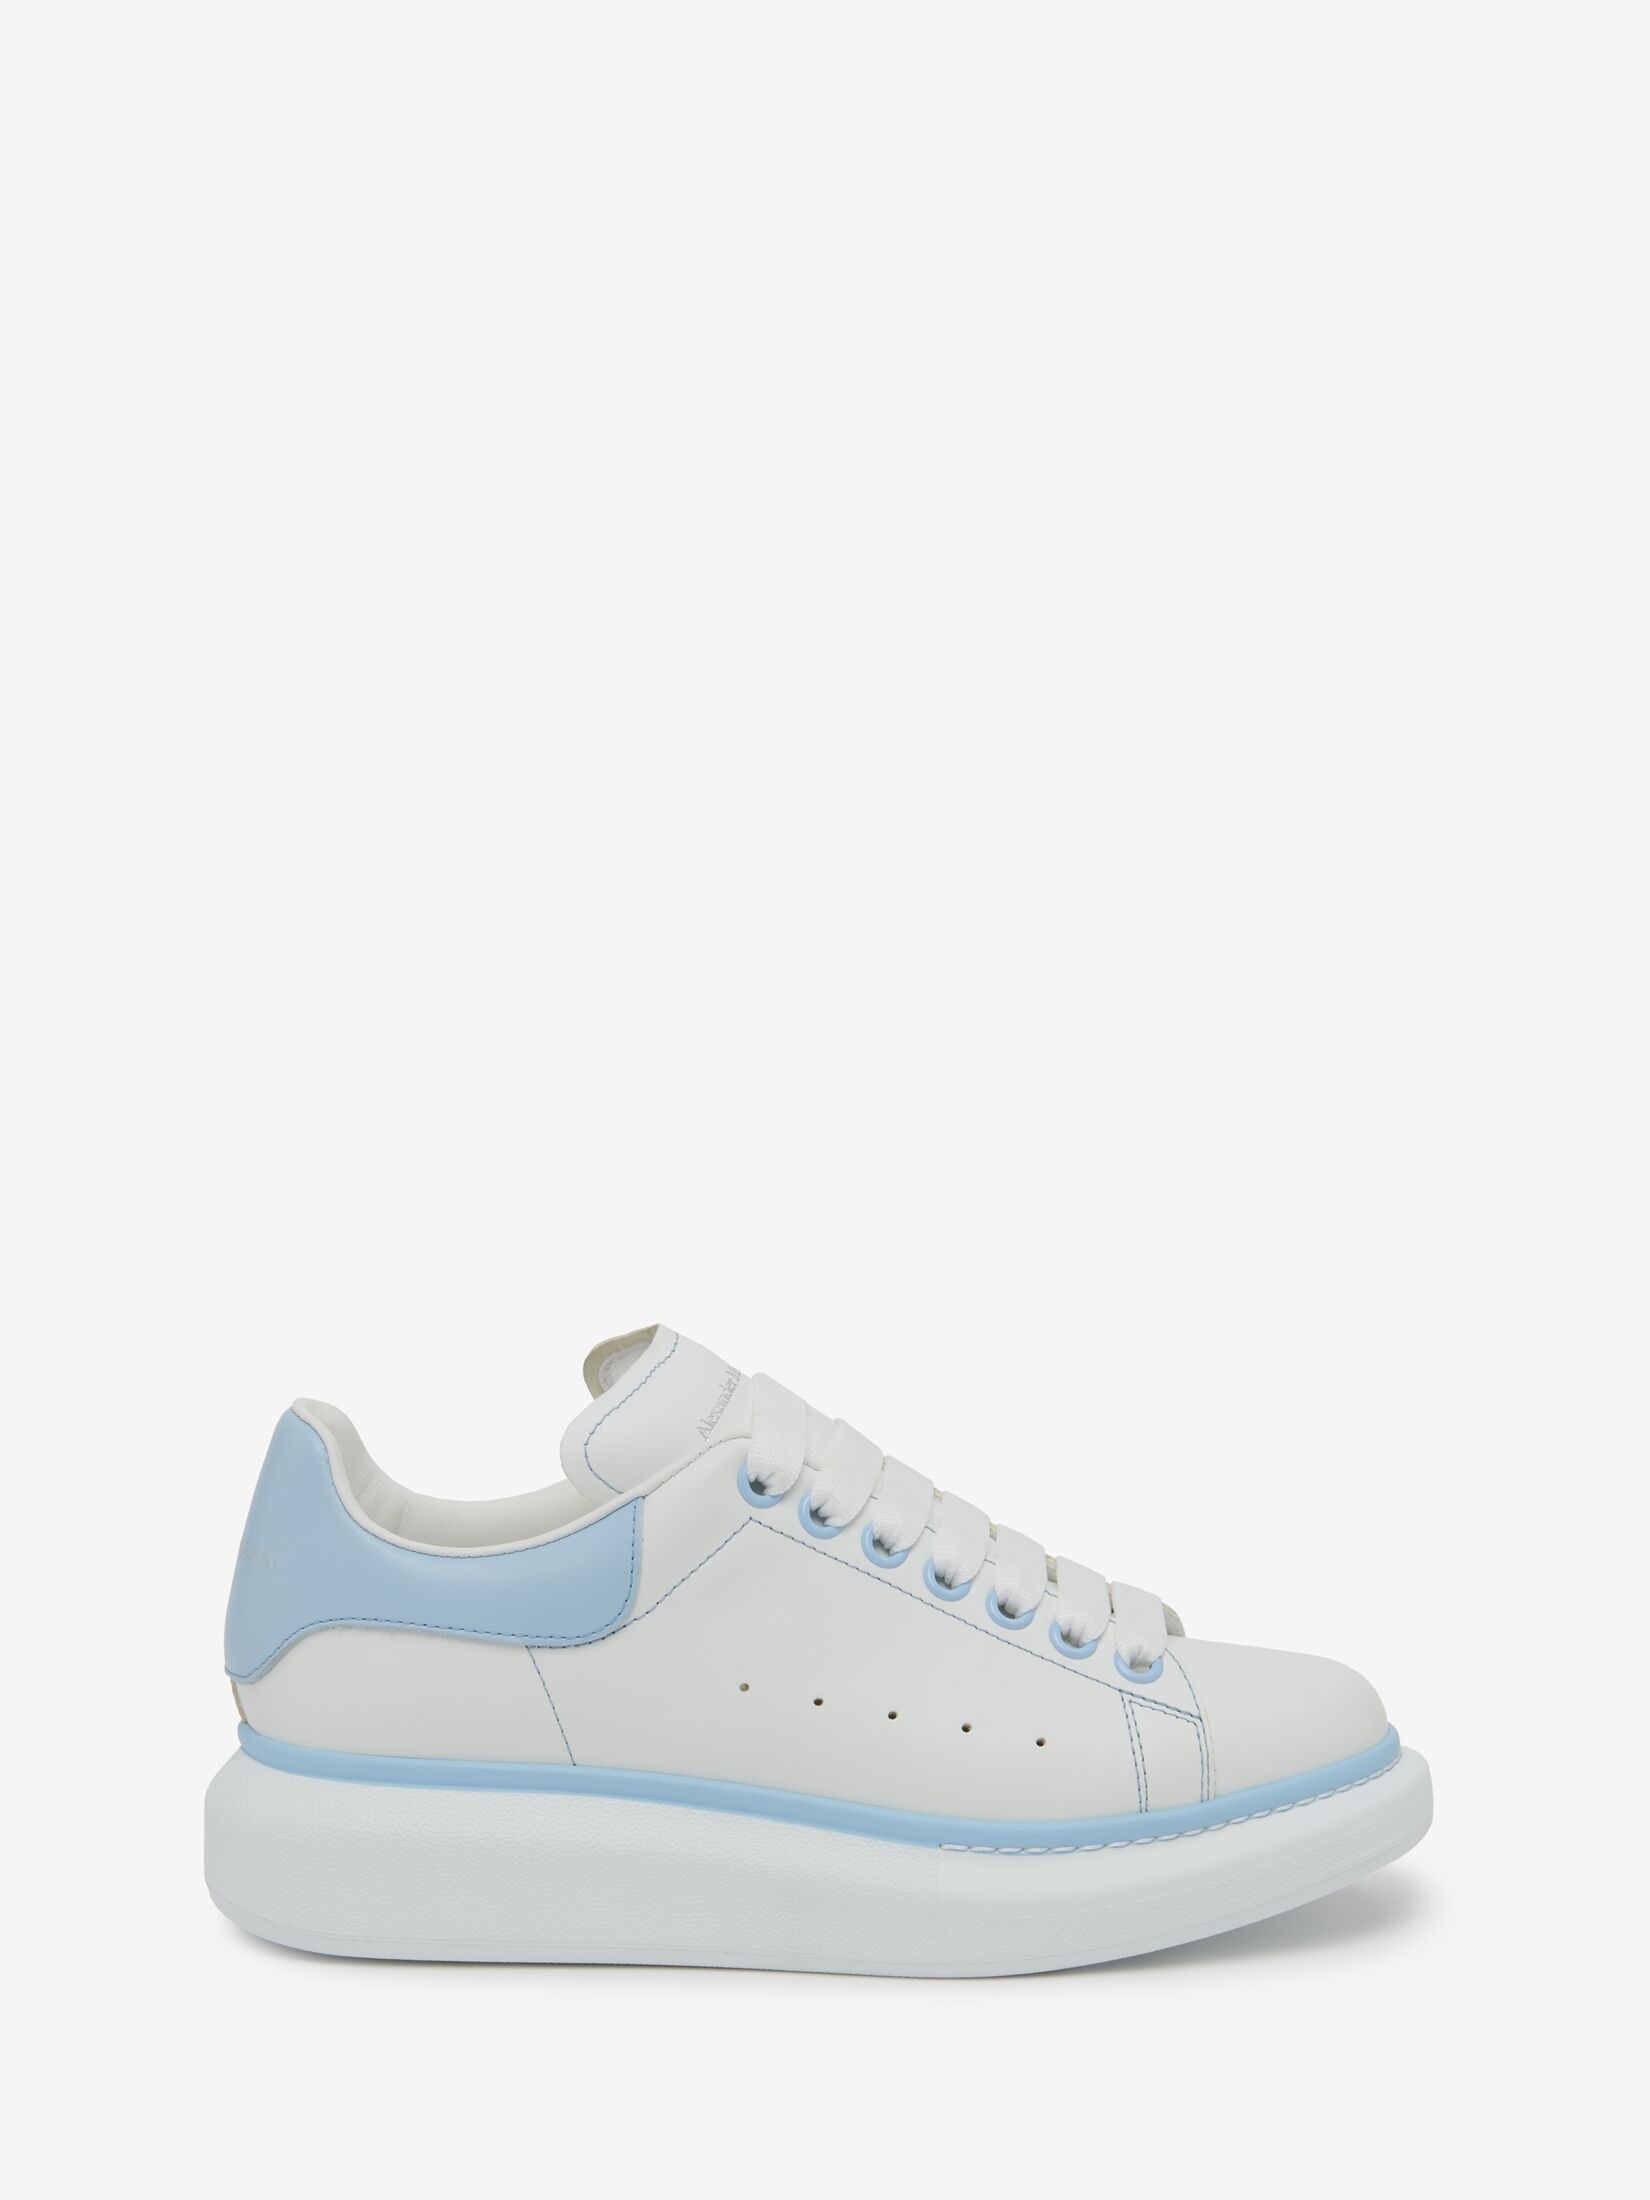 Women's Oversized Sneaker in White/powder Blue - 1